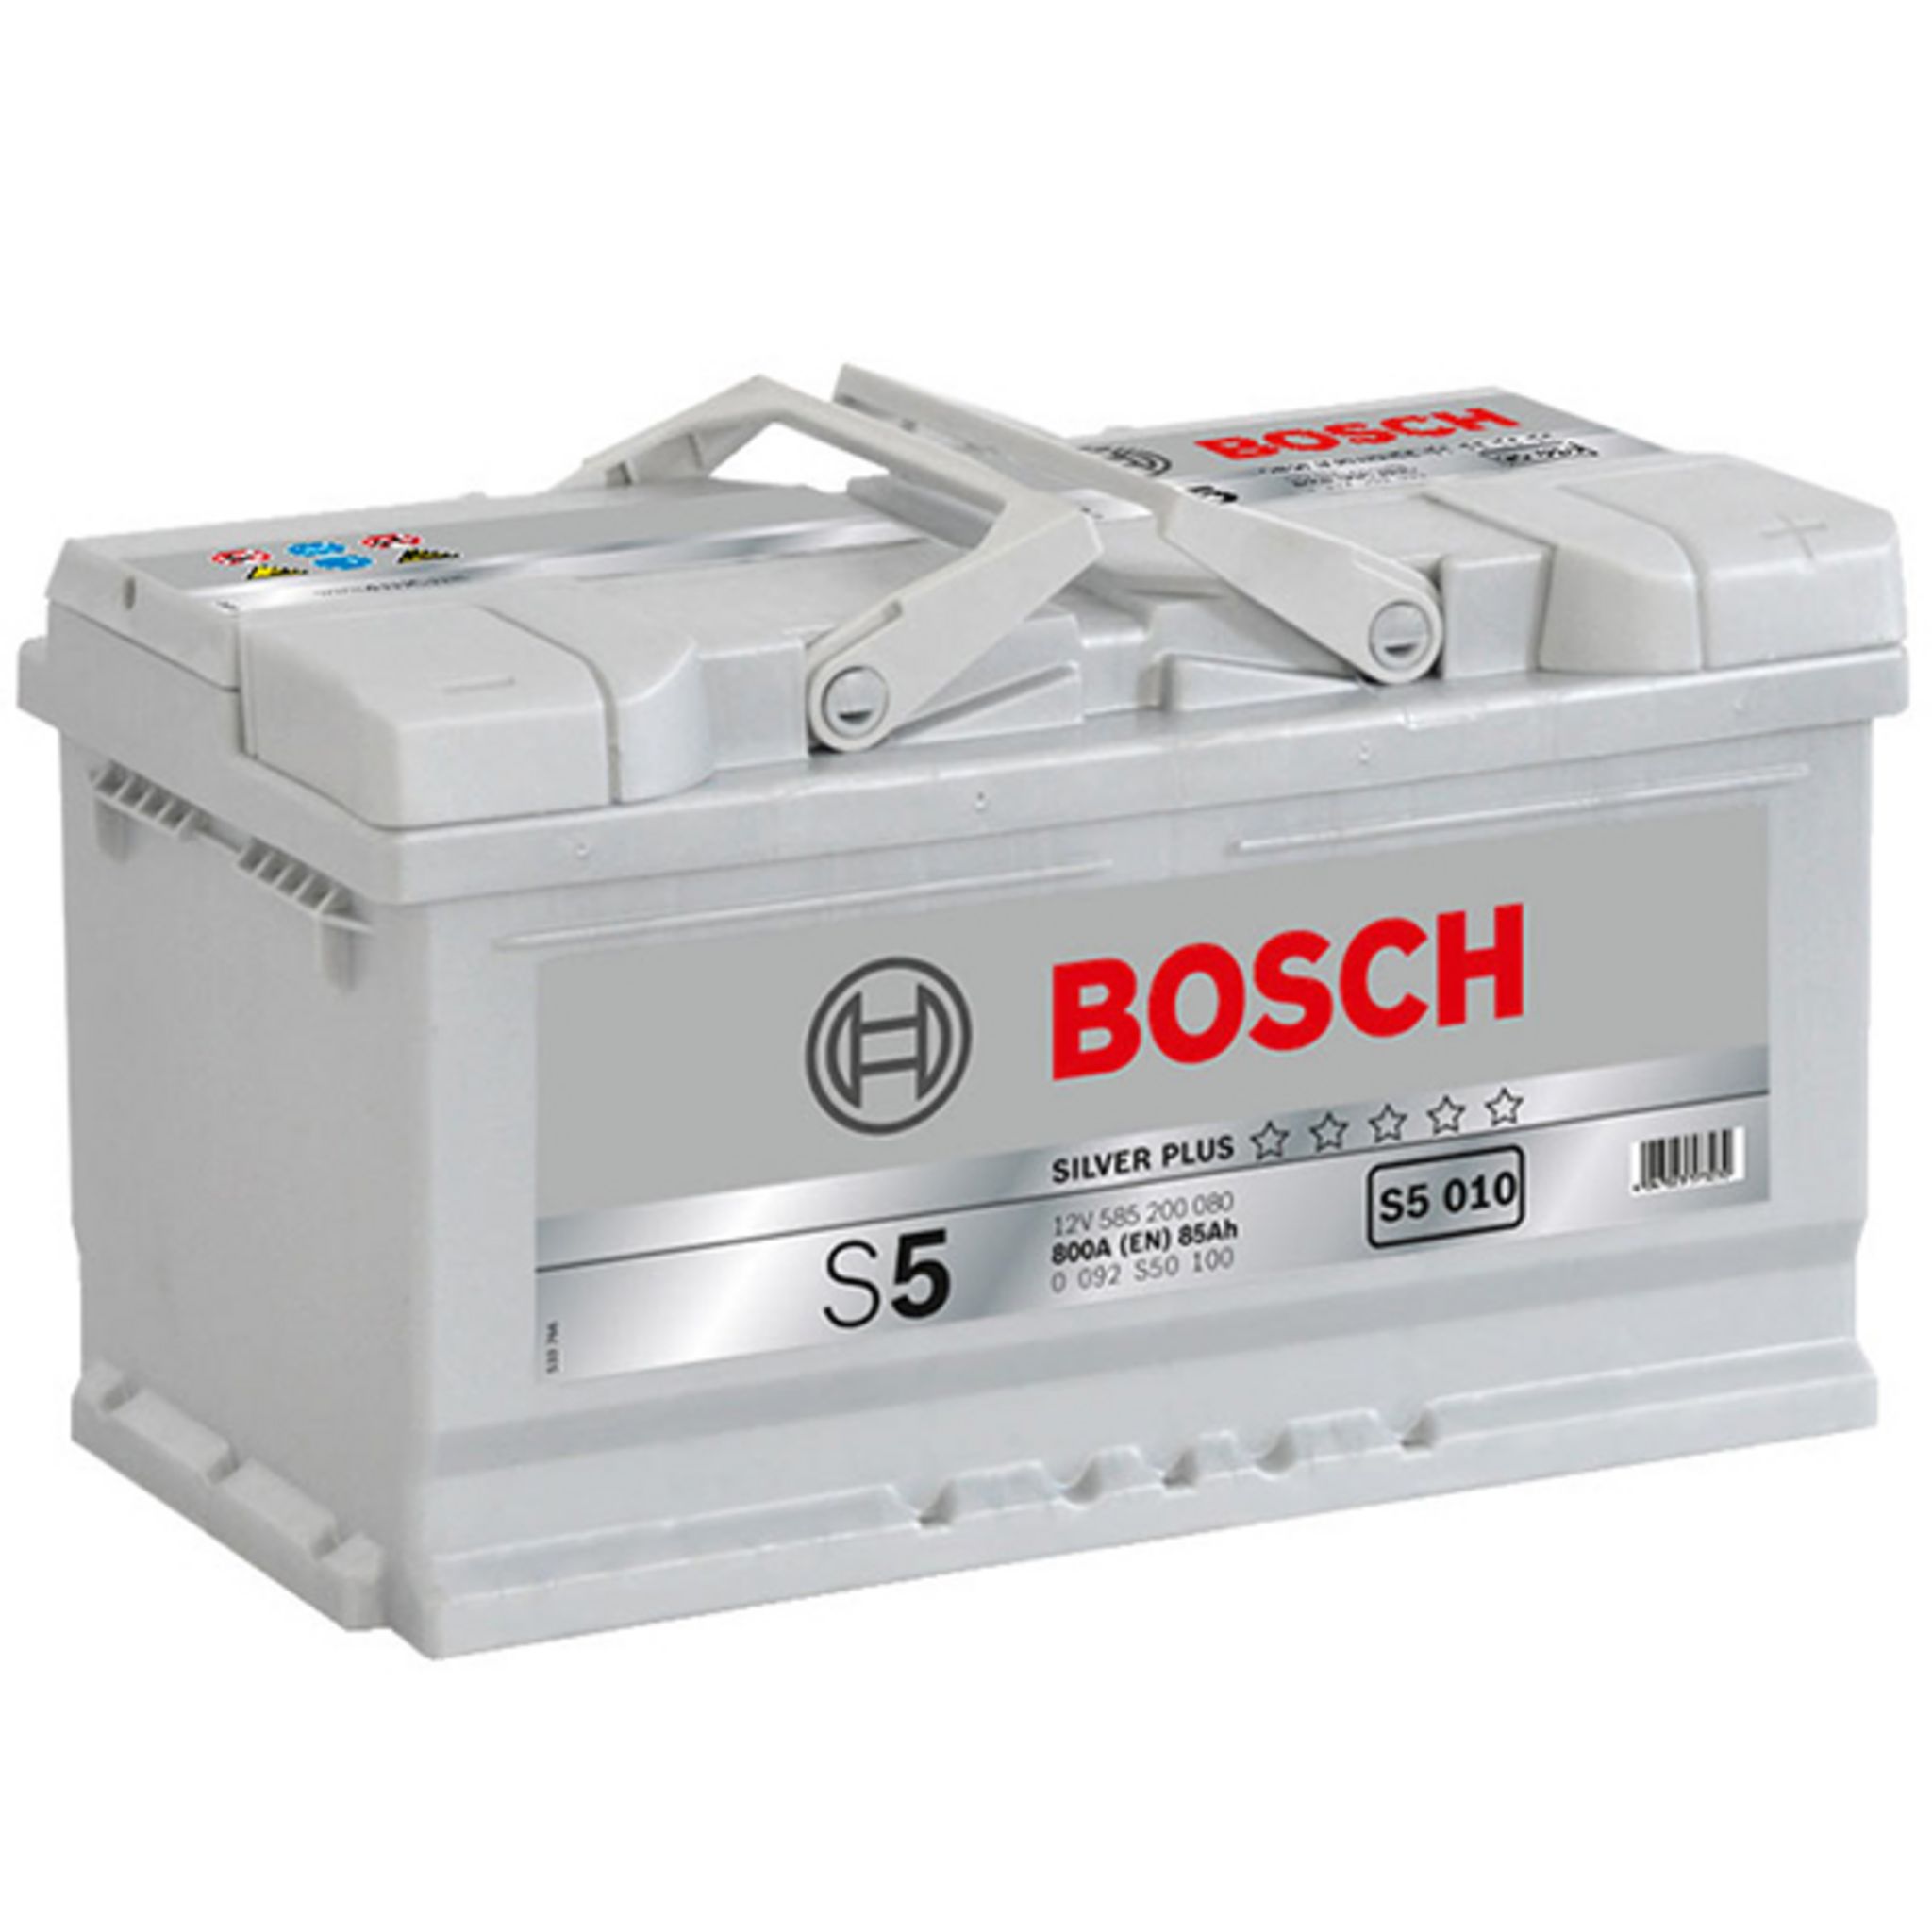 Аккумулятор автомобильный плюс. 0092s50100 Bosch аккумулятор автомобильный. 0092s50150 Bosch. Аккумулятор Bosch 0092s50040. Аккумулятор Bosch 0092s30020.